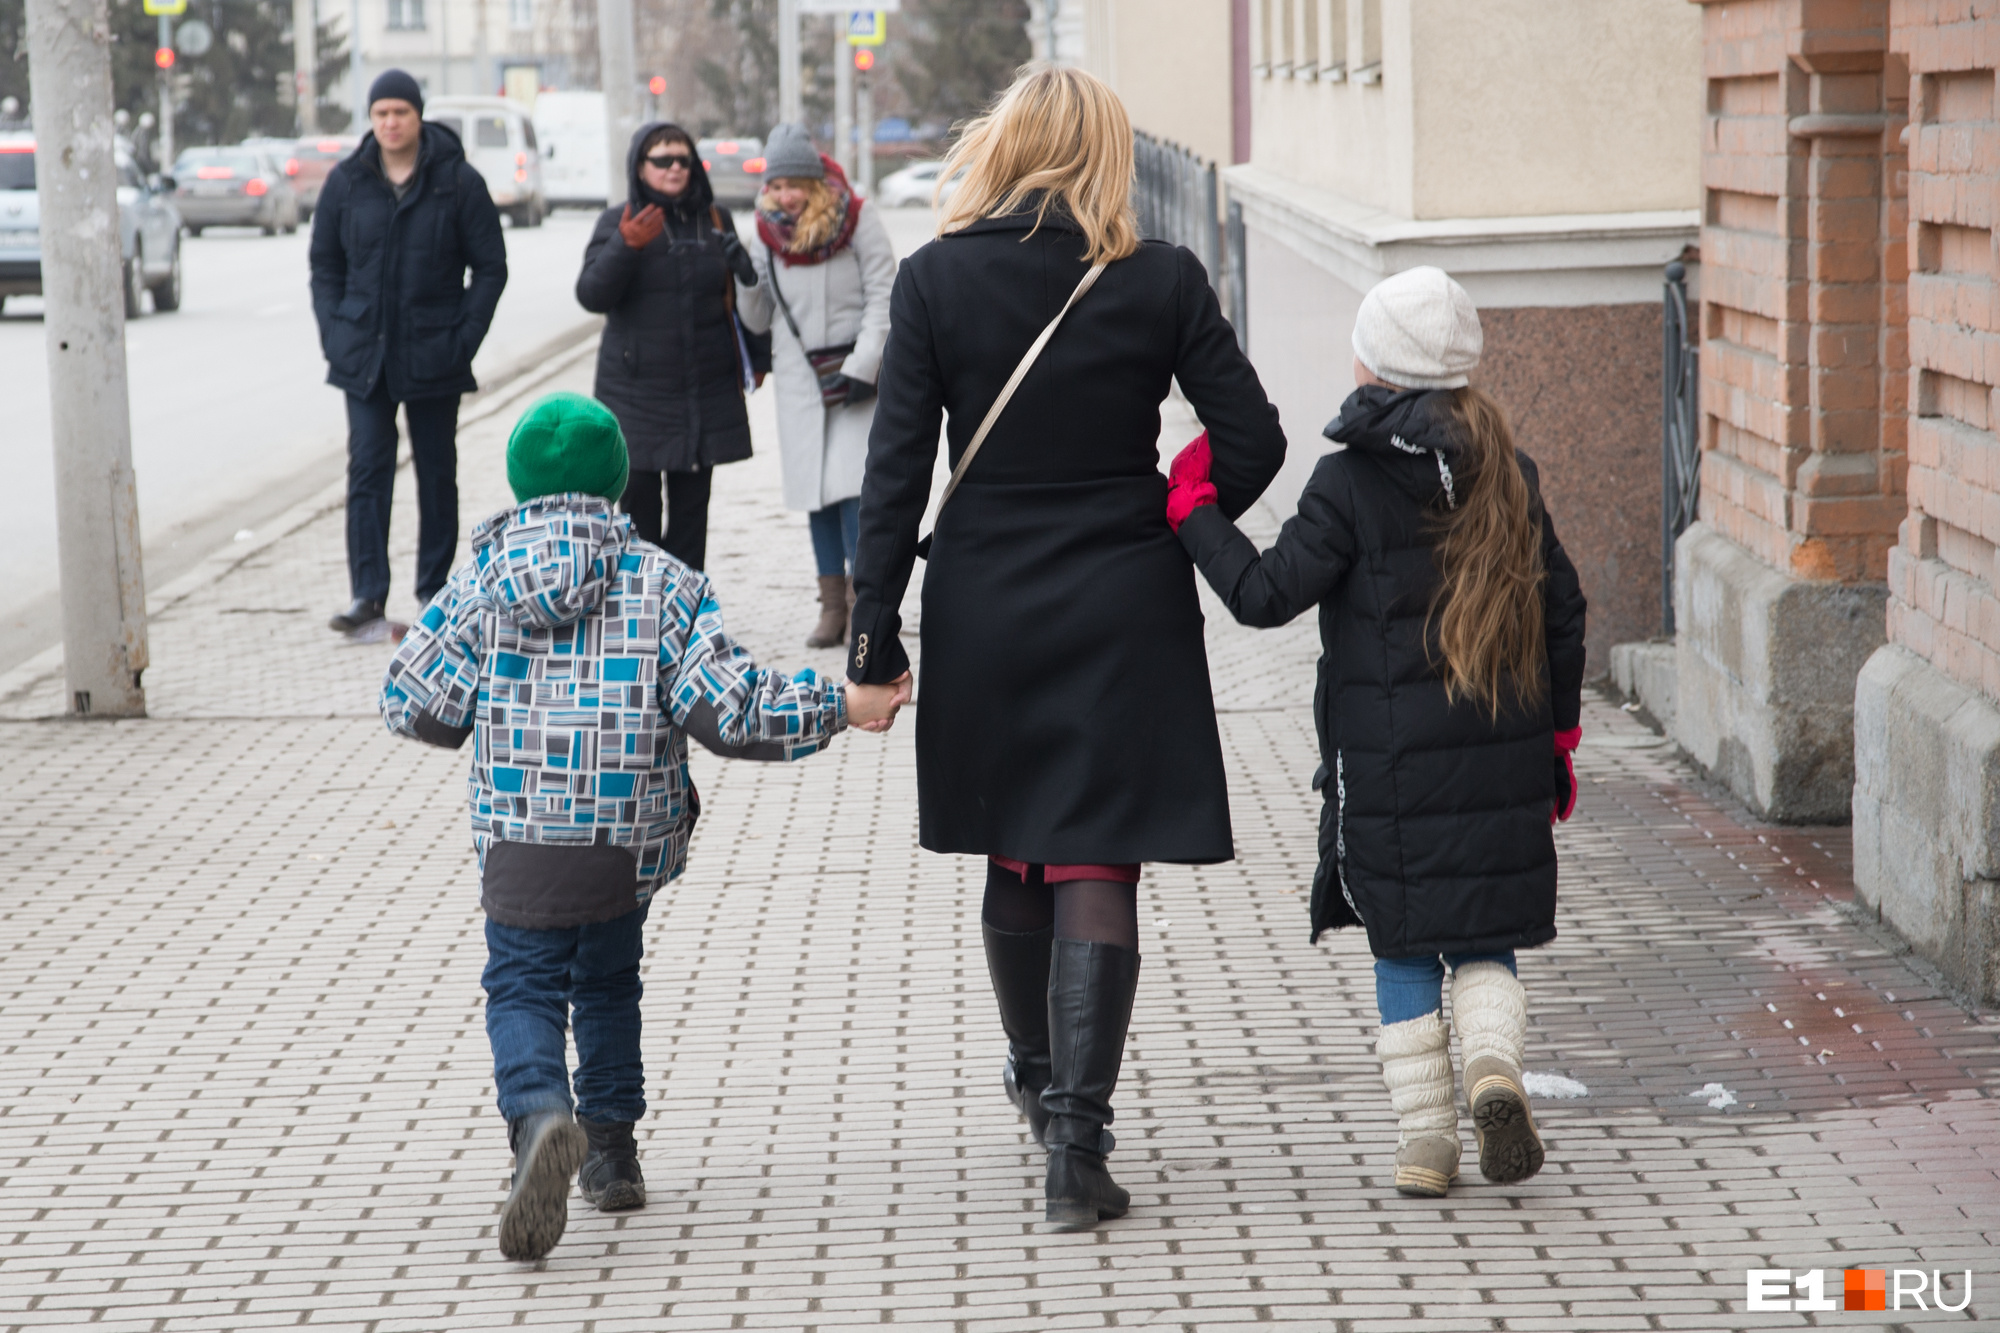 Нередко мамы в декретном отпуске согласны на подработку и могут сопровождать в школу соседских детей